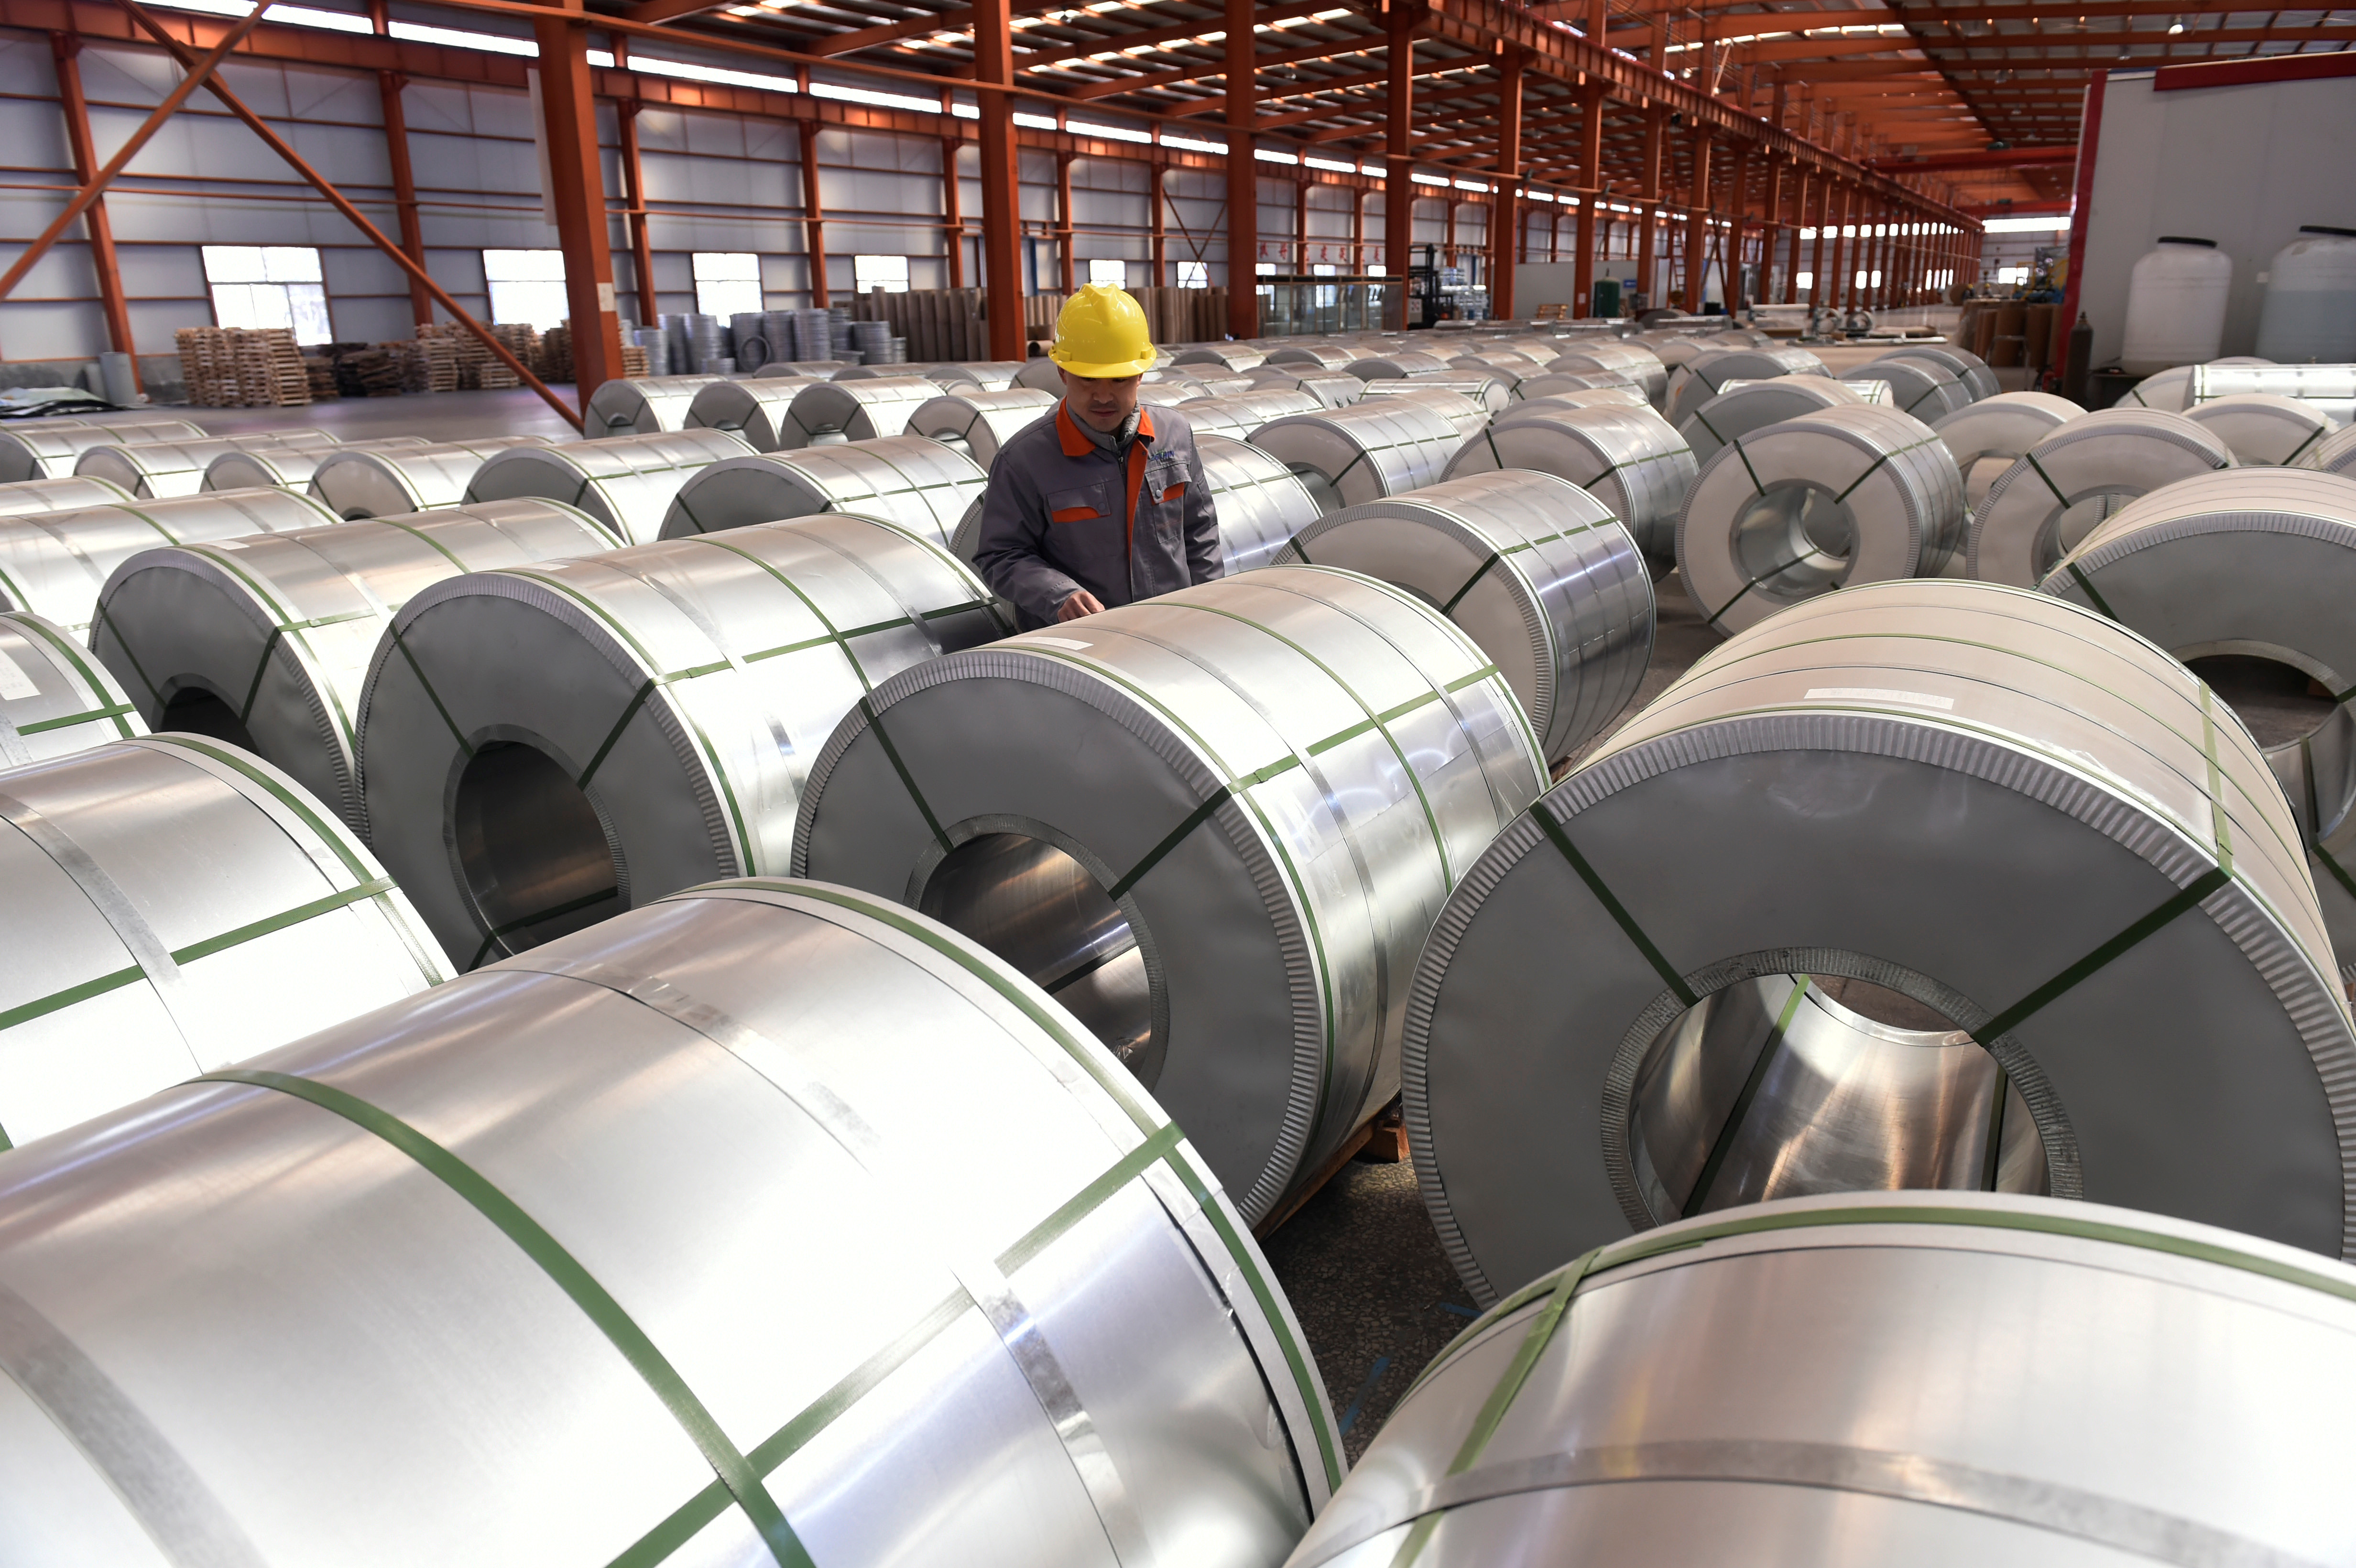 A worker checks aluminium rolls at a warehouse inside an industrial park in Binzhou